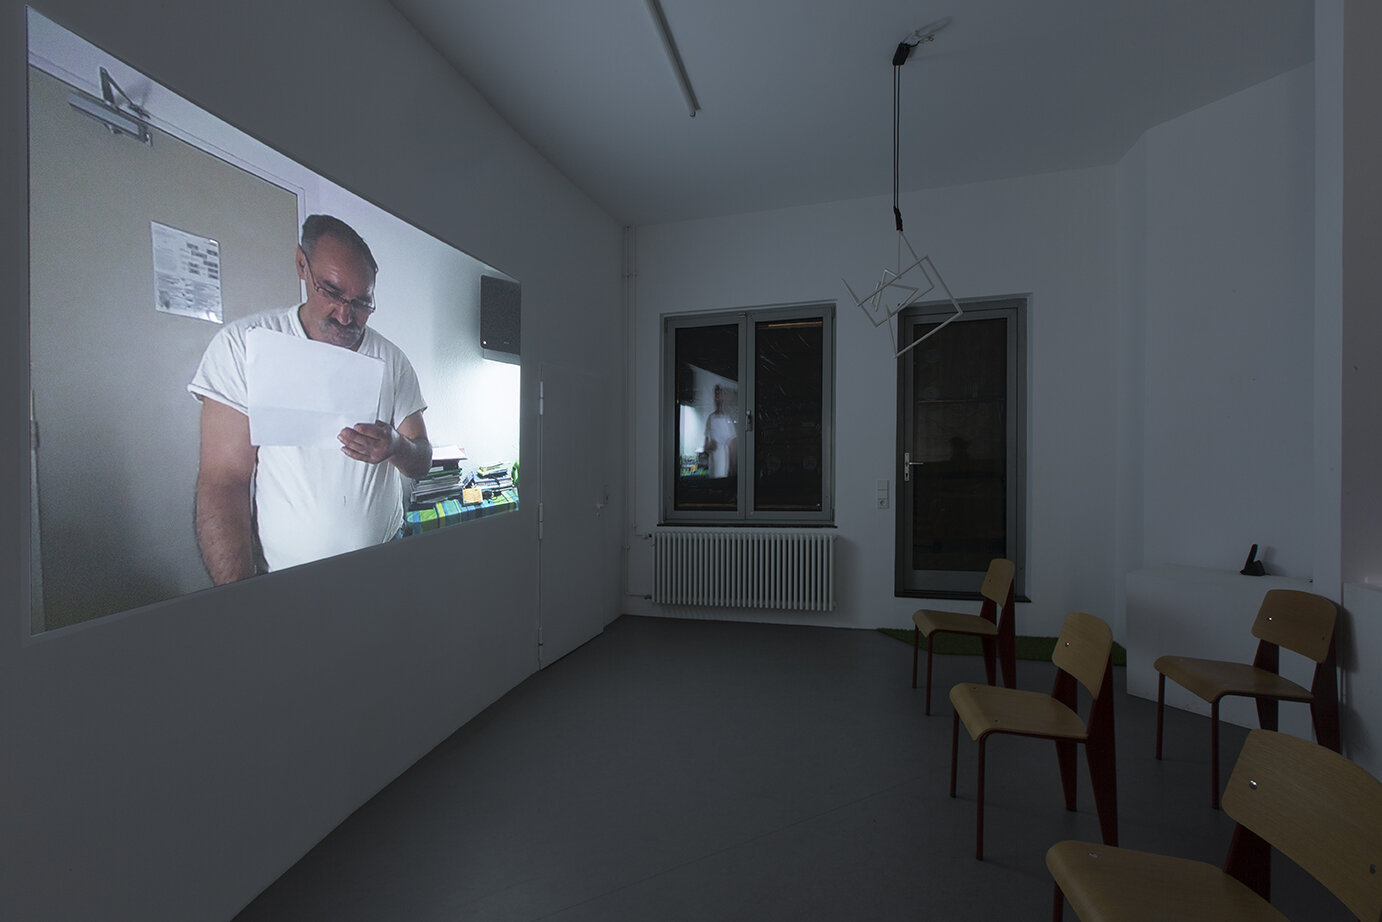  Mohamed Bourouissa: “Nasser”, 2020, Exhibition views, Galerie Parisa Kind, Frankfurt am Main 